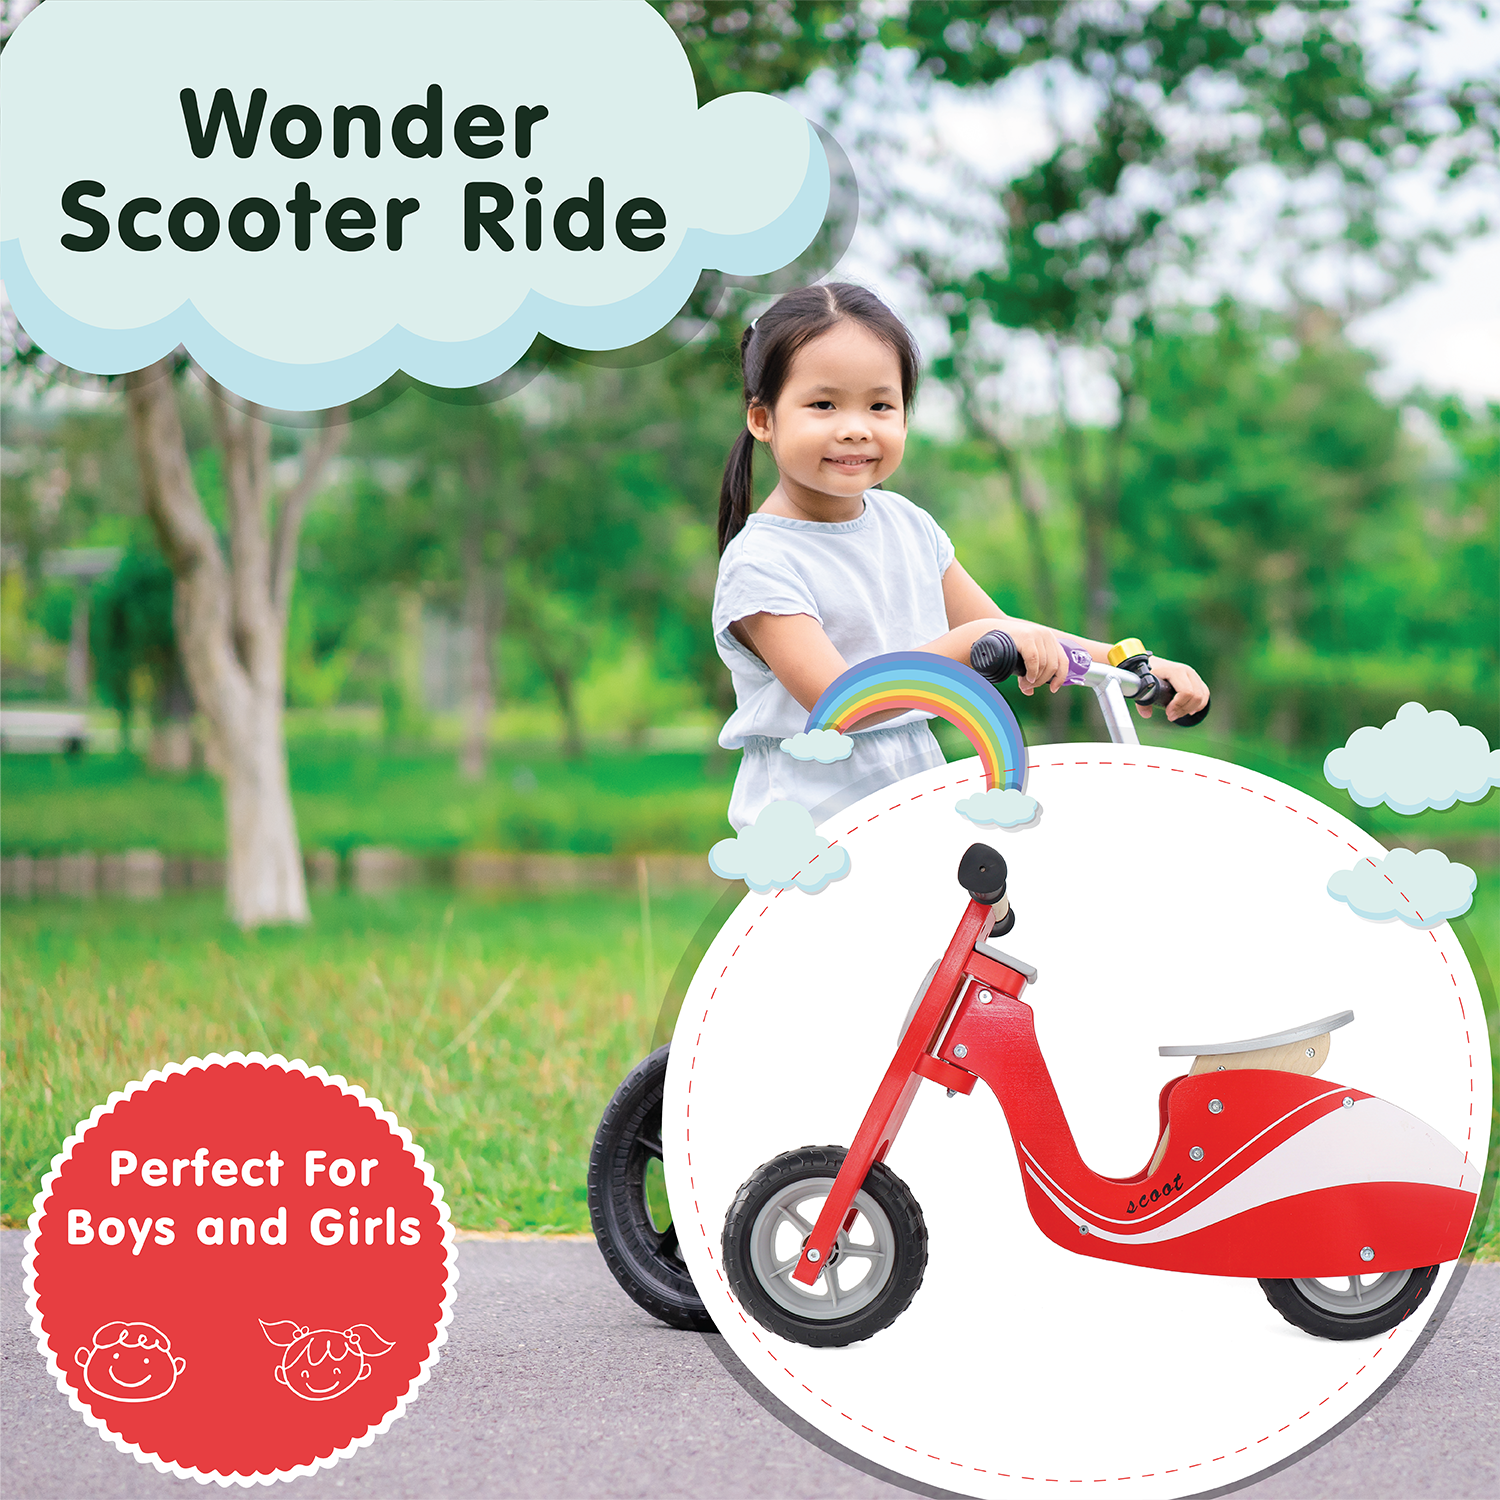 Scoot & Ride – Little Wonder & Co